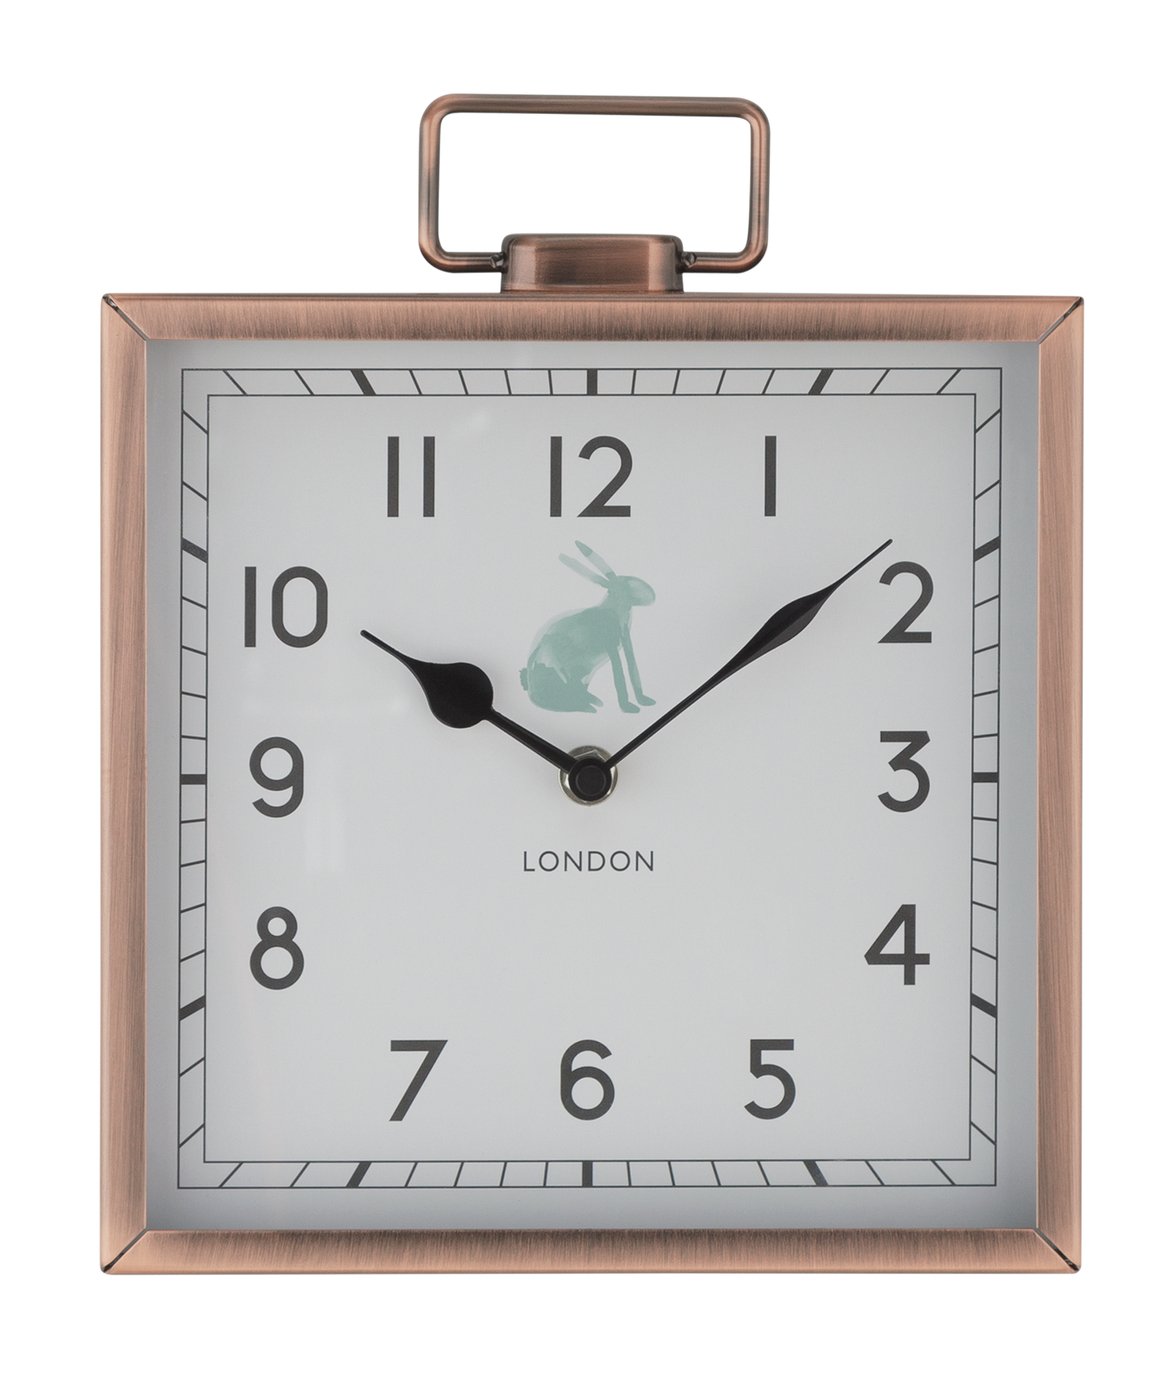 Argos Home Highland Mantel Clock Review